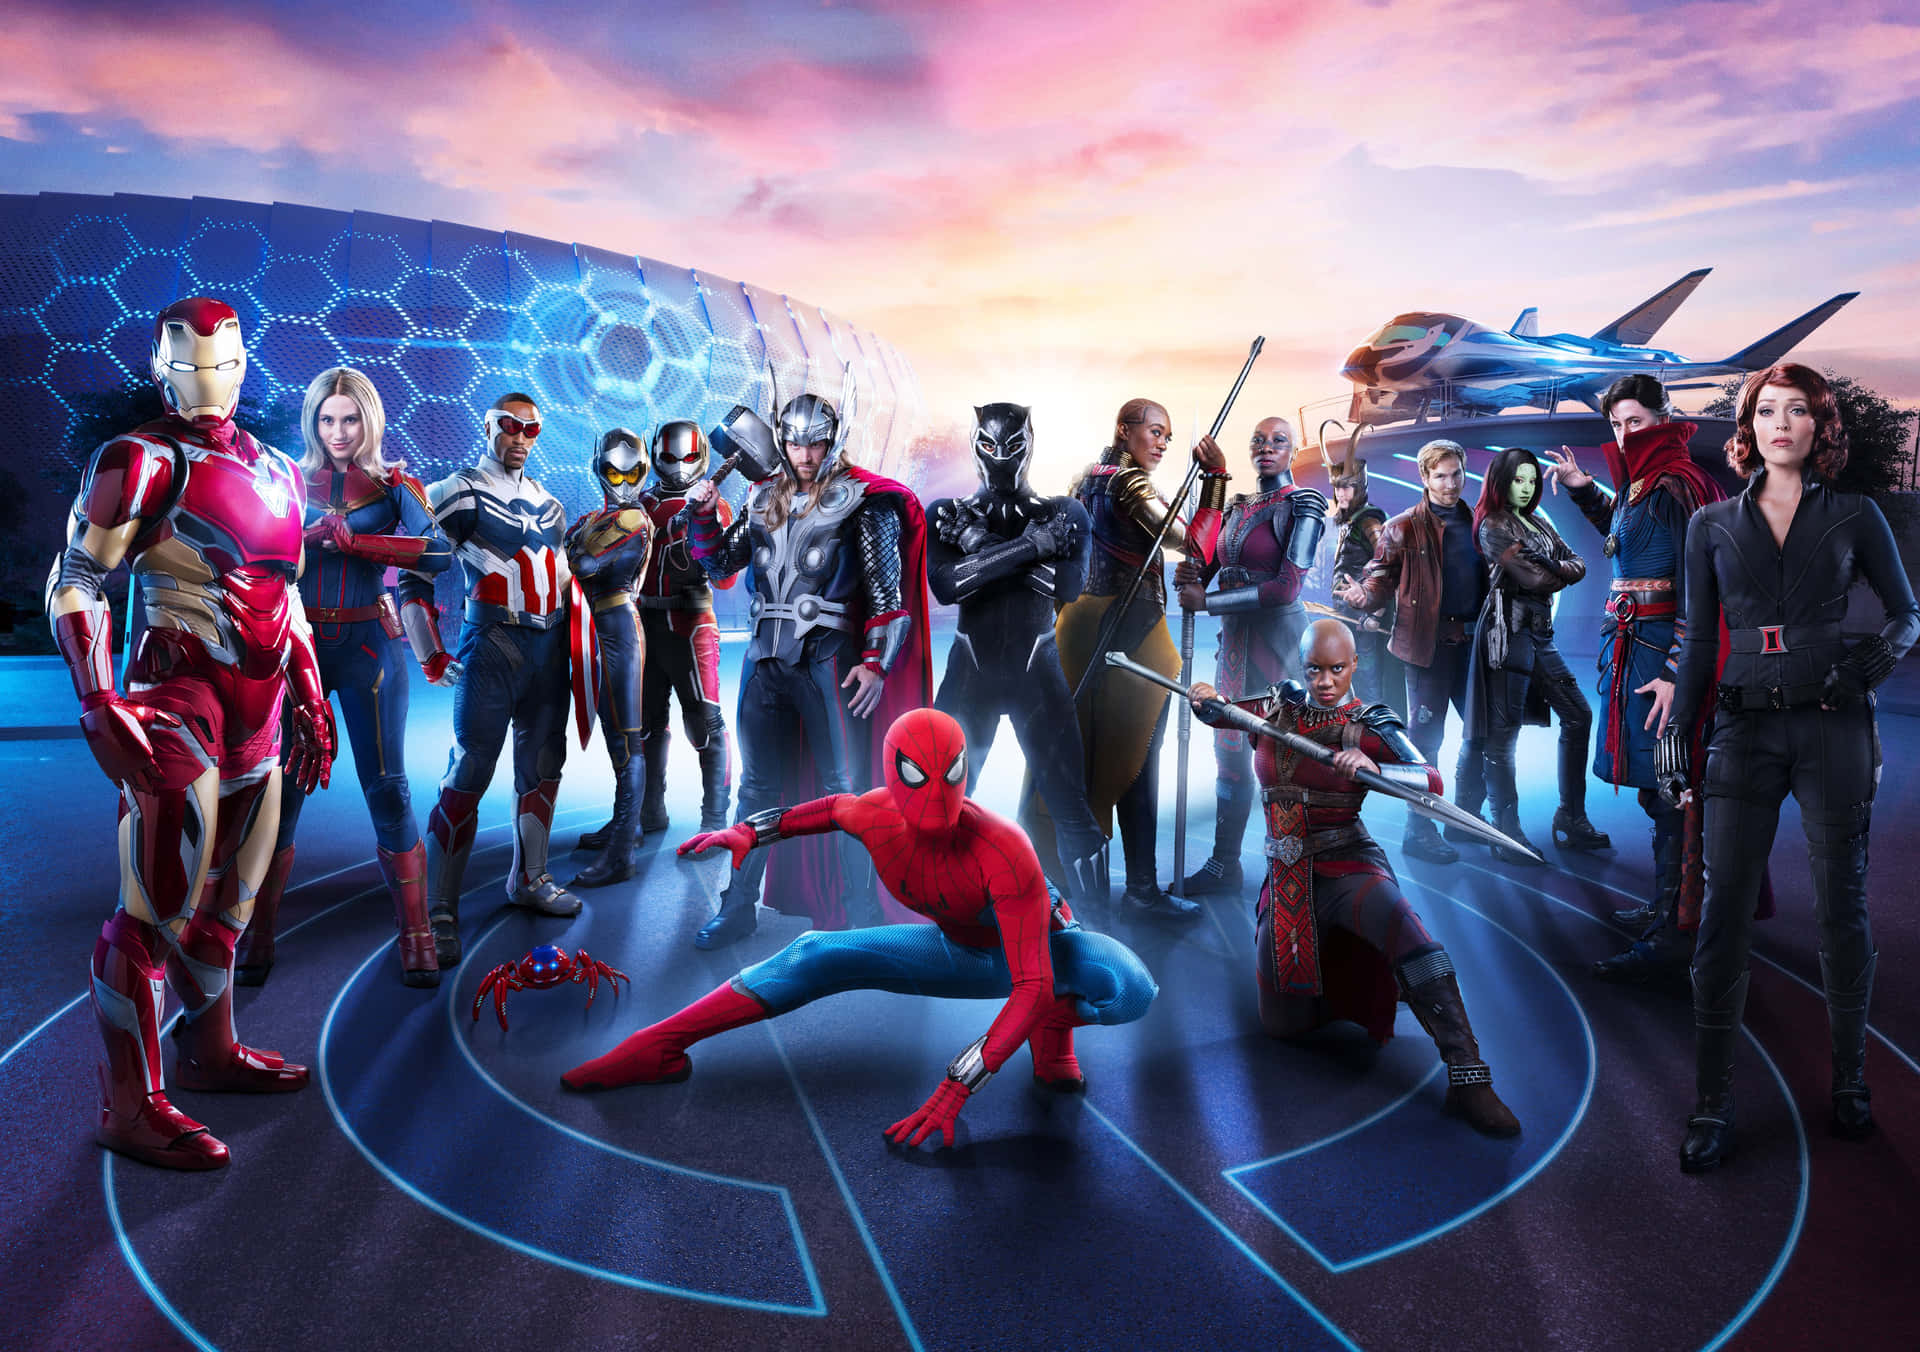 Super Team stands together against all odds! Wallpaper